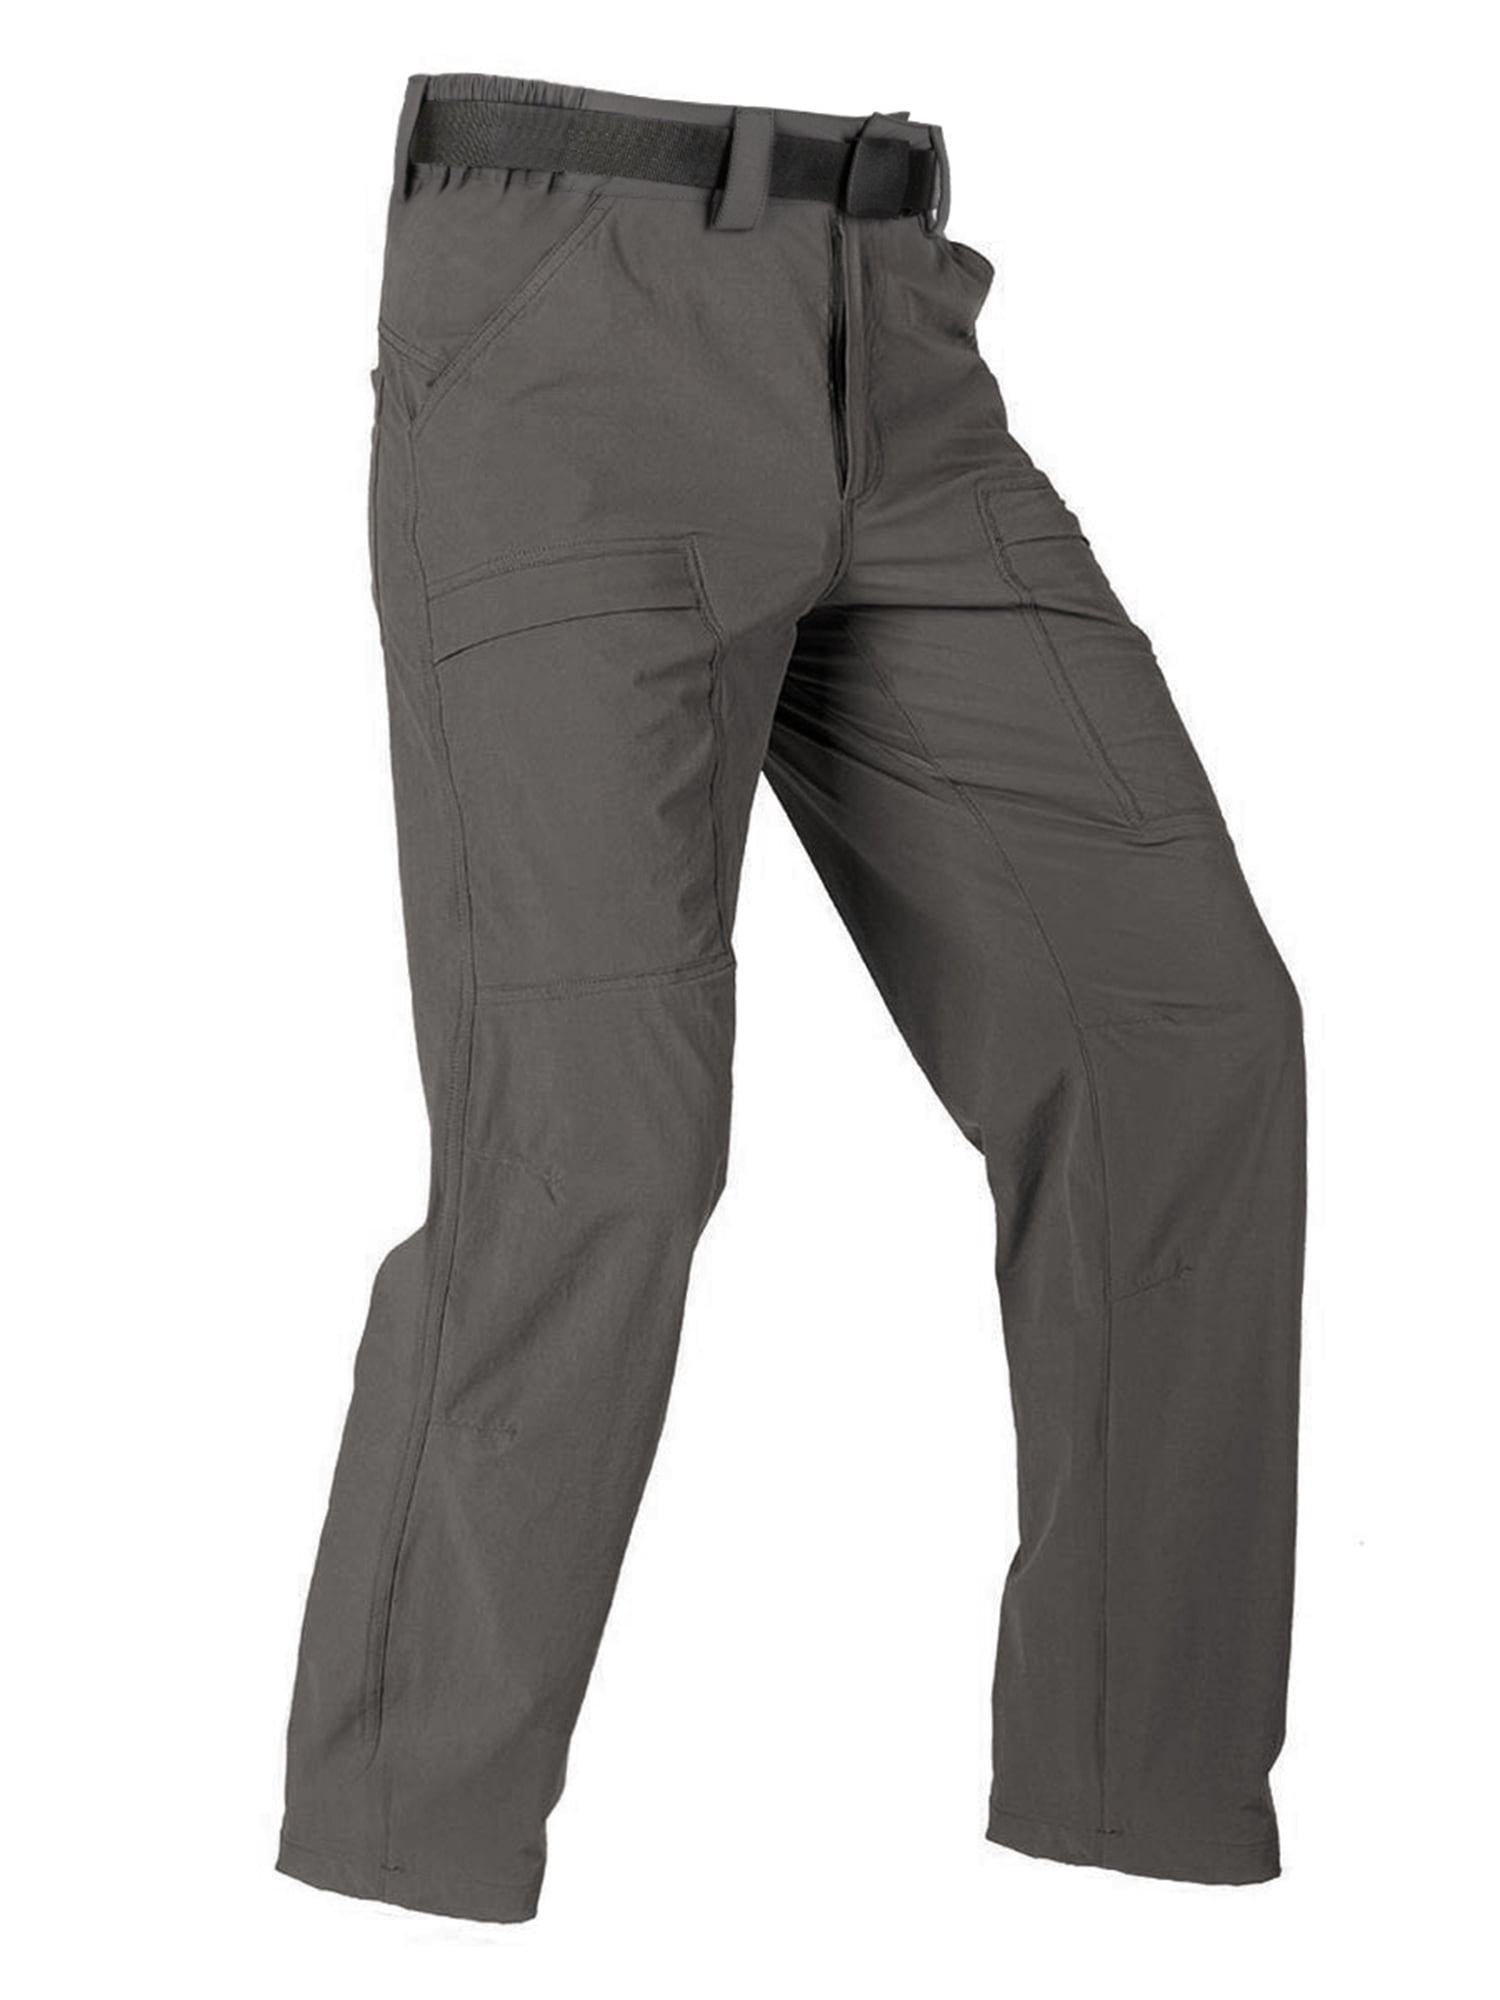 Coleman Men's Fleece Lined Tear Resistant Durable Stretch Tough Wear Pant  (Copper, 34x32) 